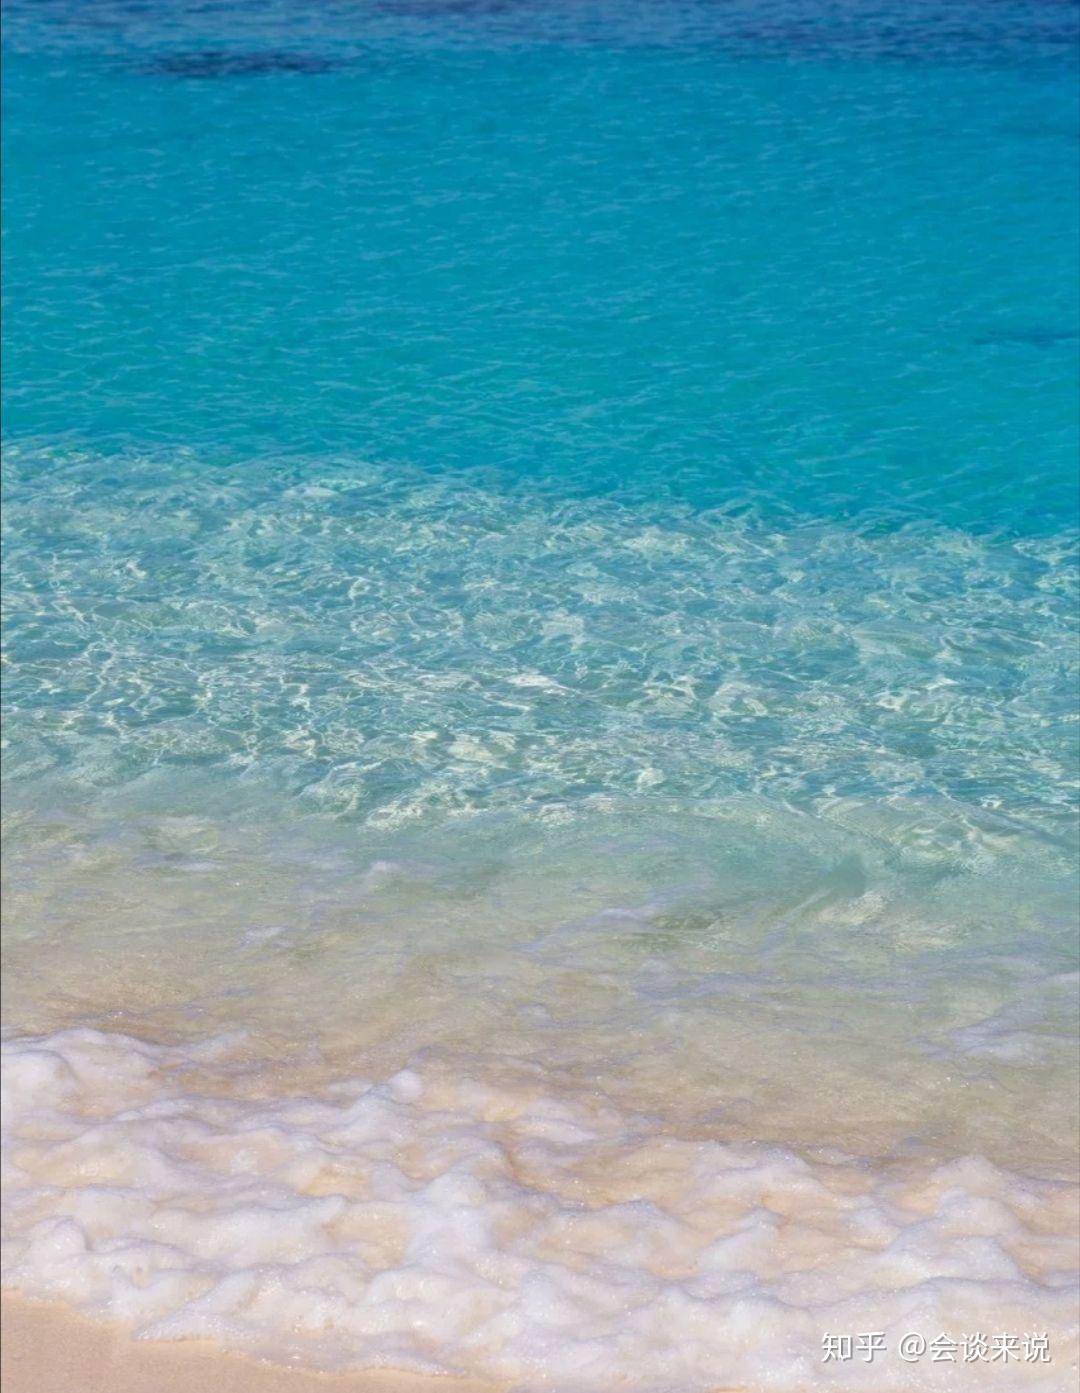 看到的海水为什么是蓝色的,而不是其它颜色? 